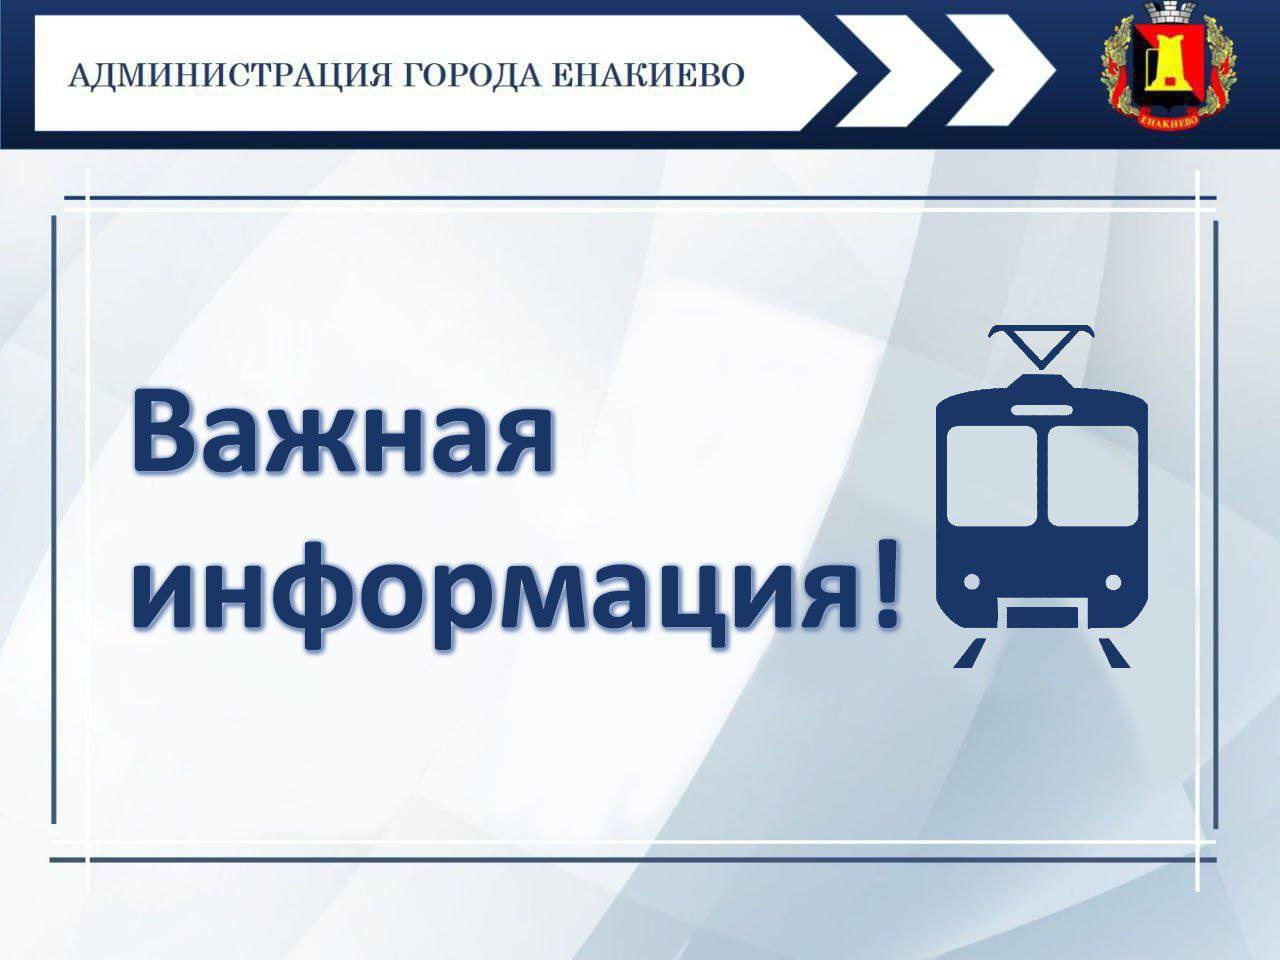 Бесплатный проезд в трамваях городского округа Енакиево .